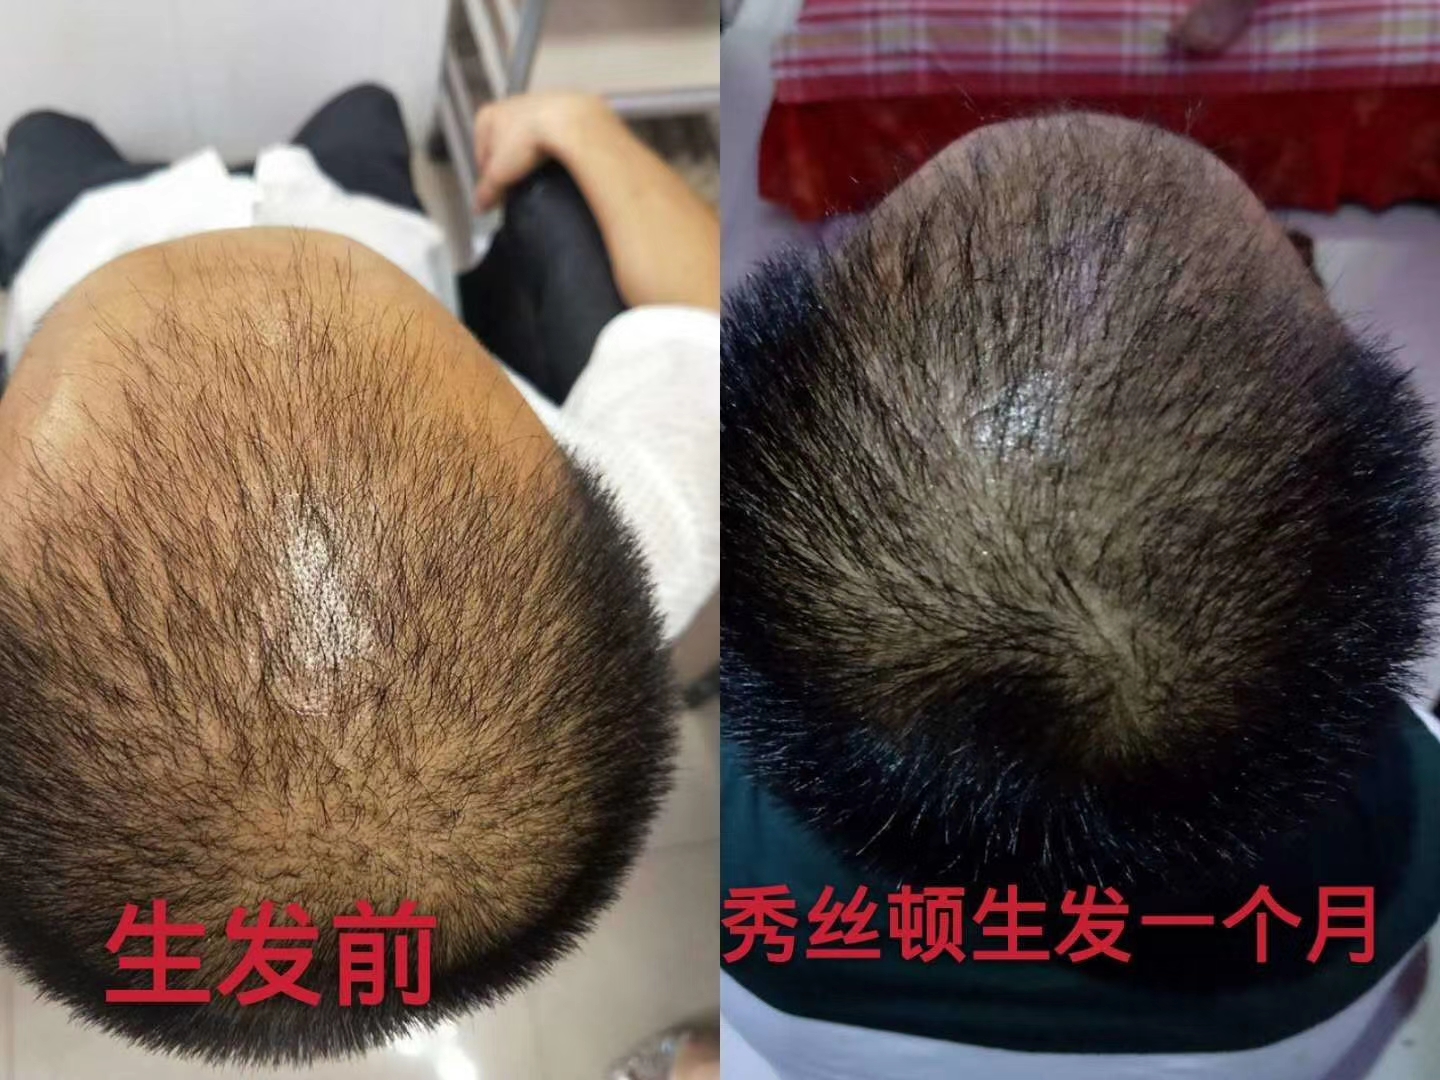 秀丝顿植物染发是一种全新的染发方式，它采用天然植物成分，不含任何化学染料